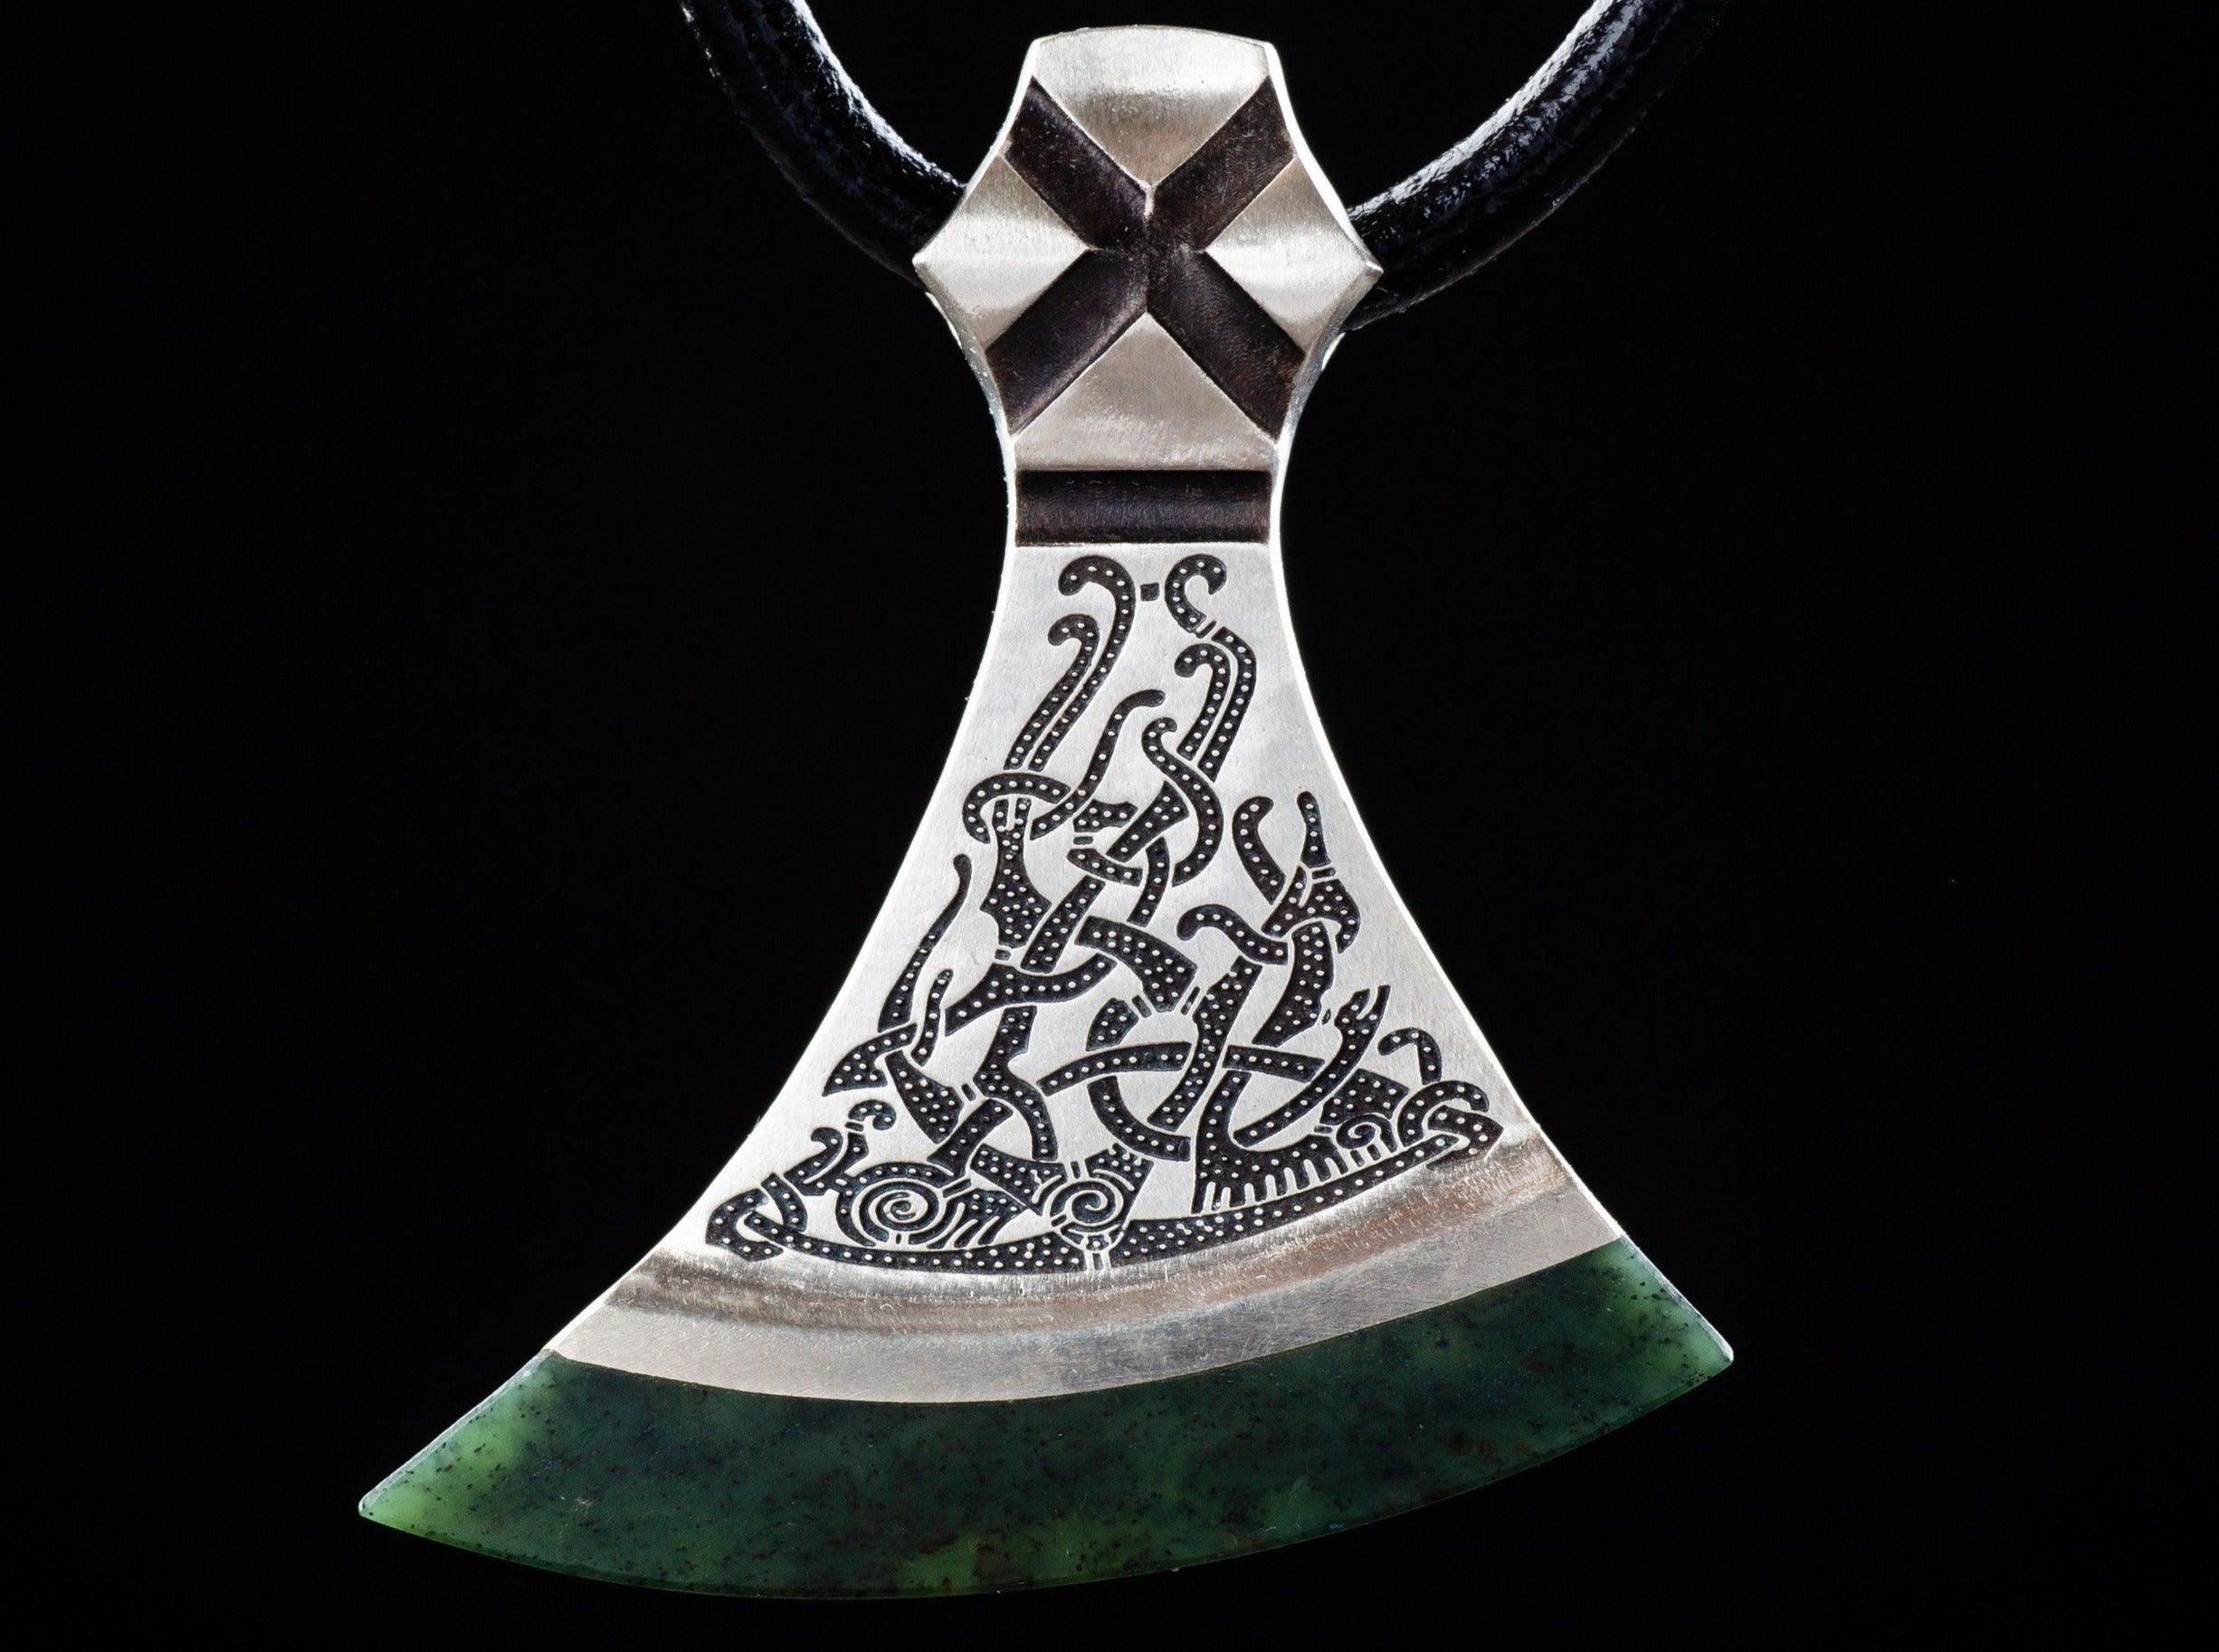 foliate ornament on a silver axe